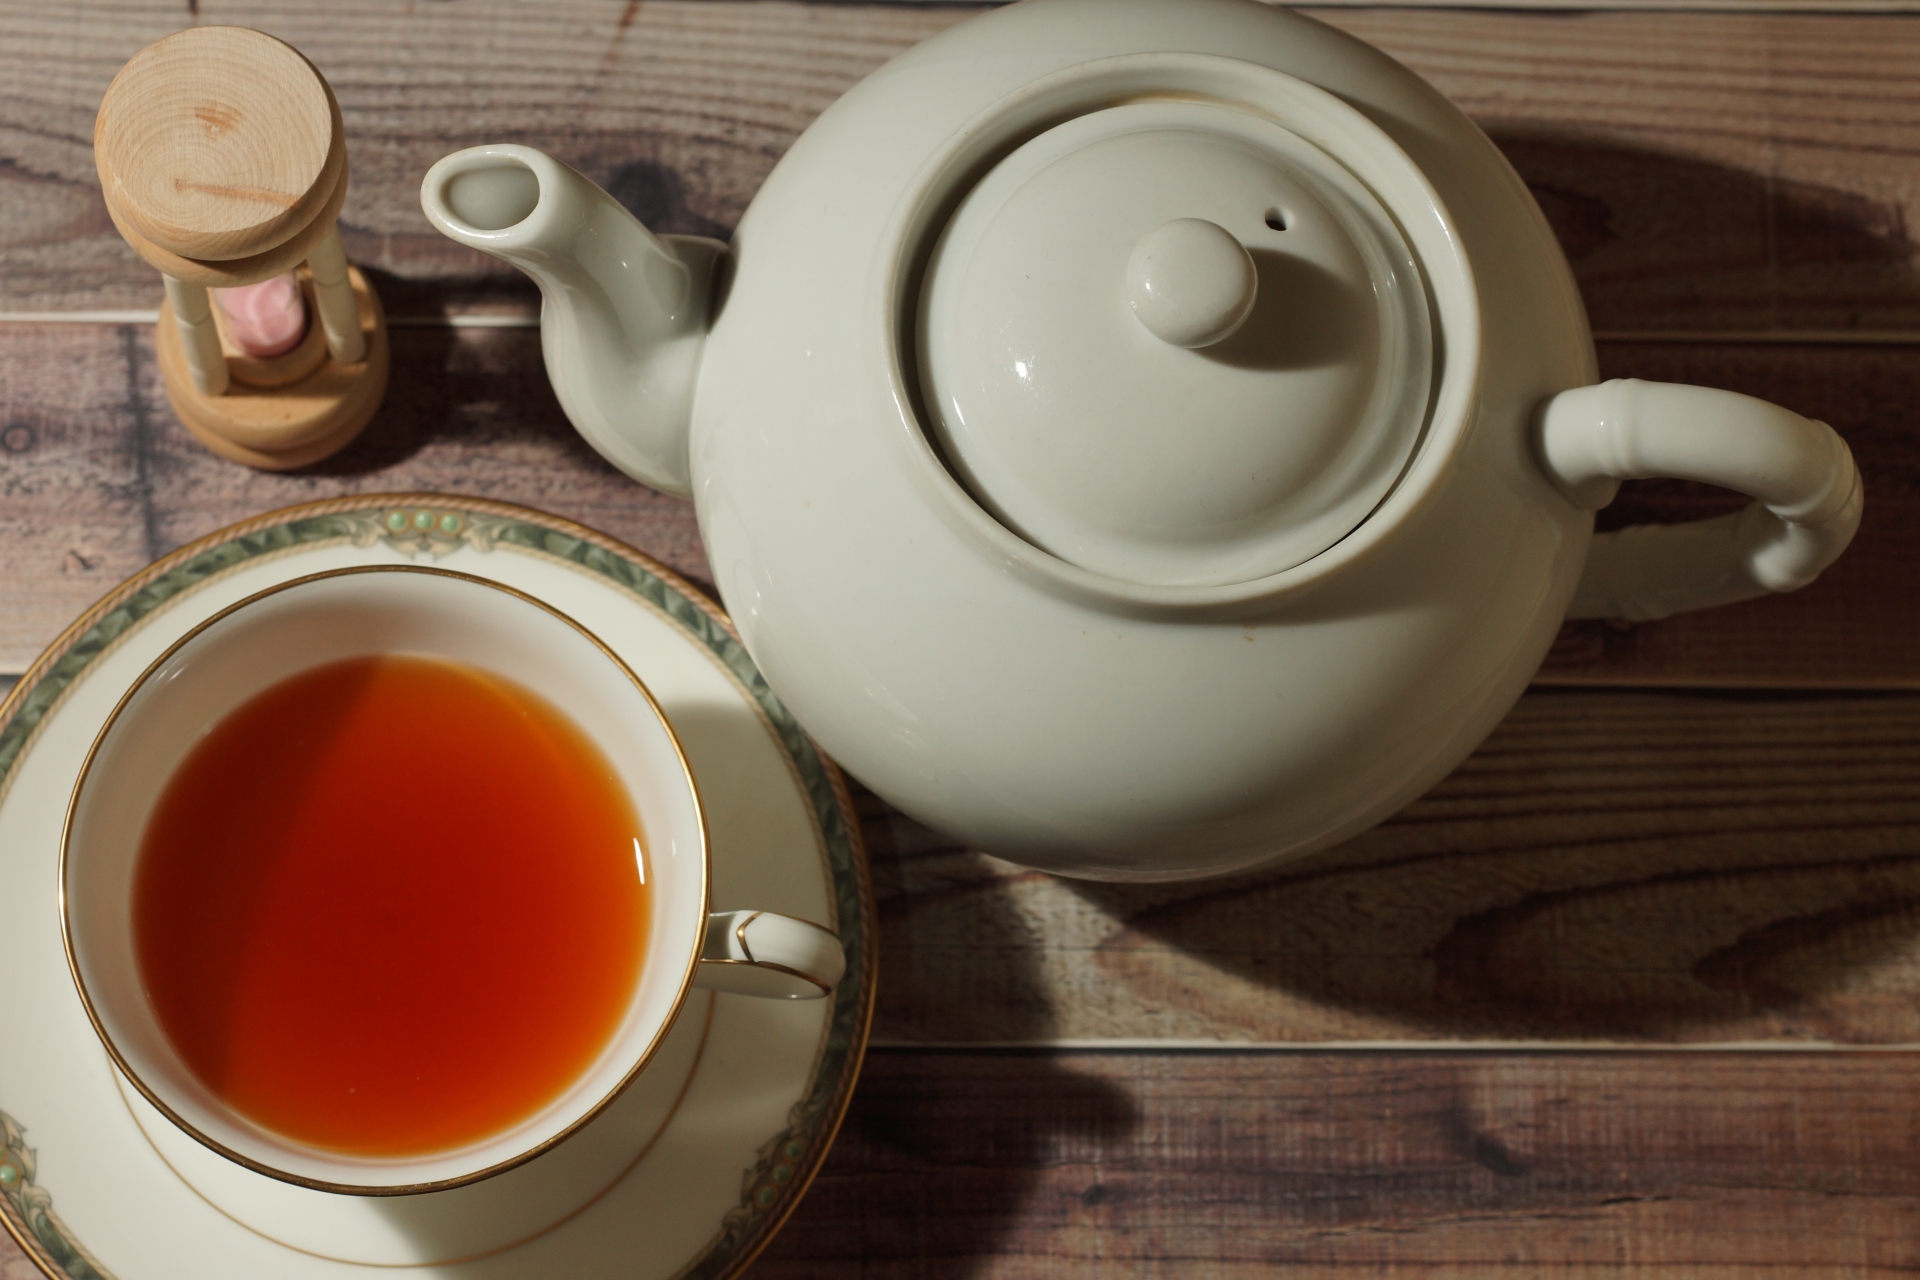 世界三大紅茶】インド紅茶ダージリンの魅力【紅茶のシャンパンと表現